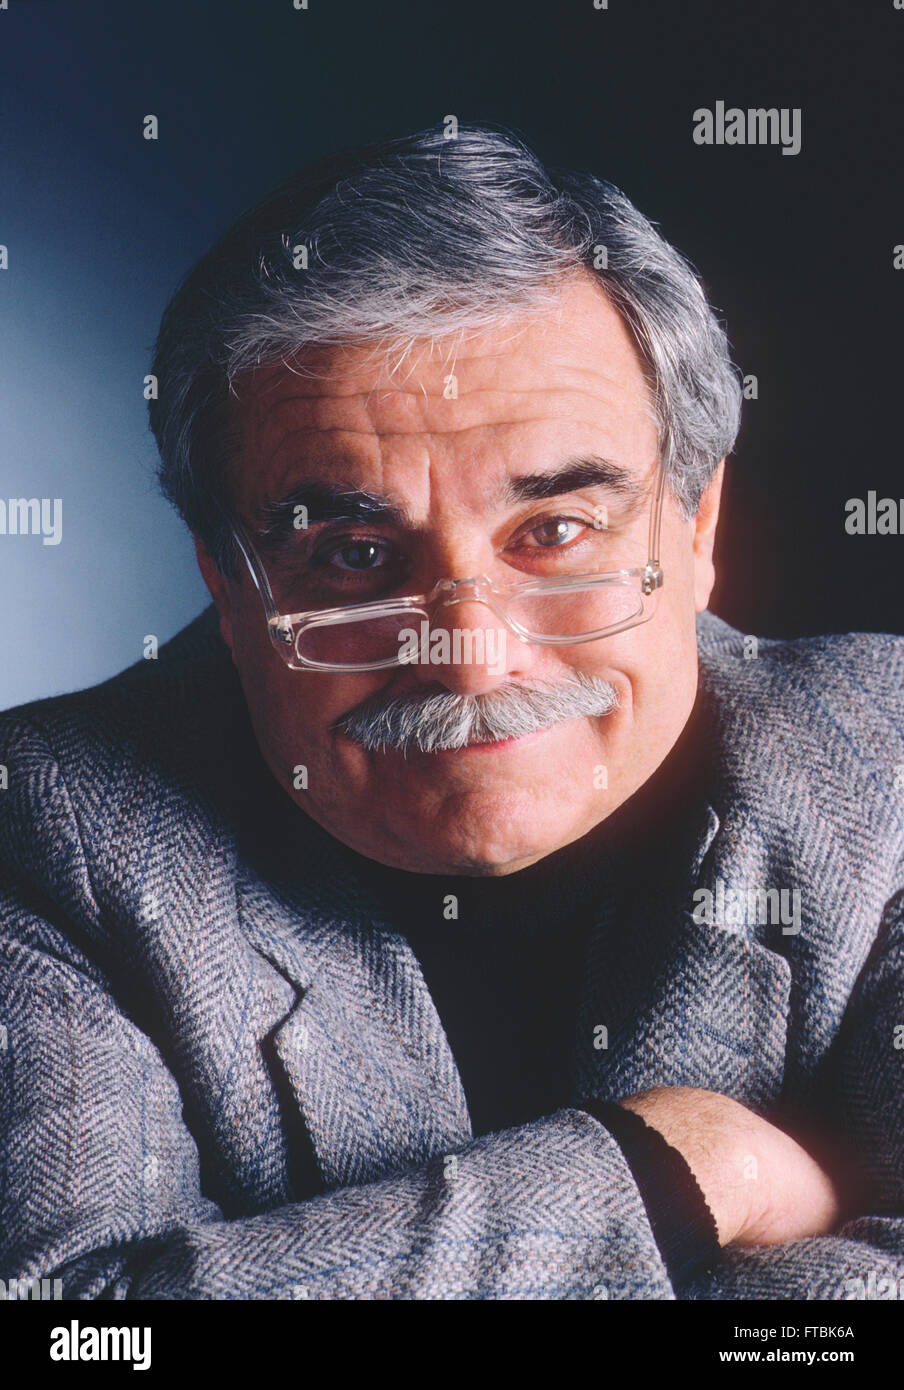 Retrato de estudio de edad distinquished caballero con gafas, bigote y cabello gris Foto de stock